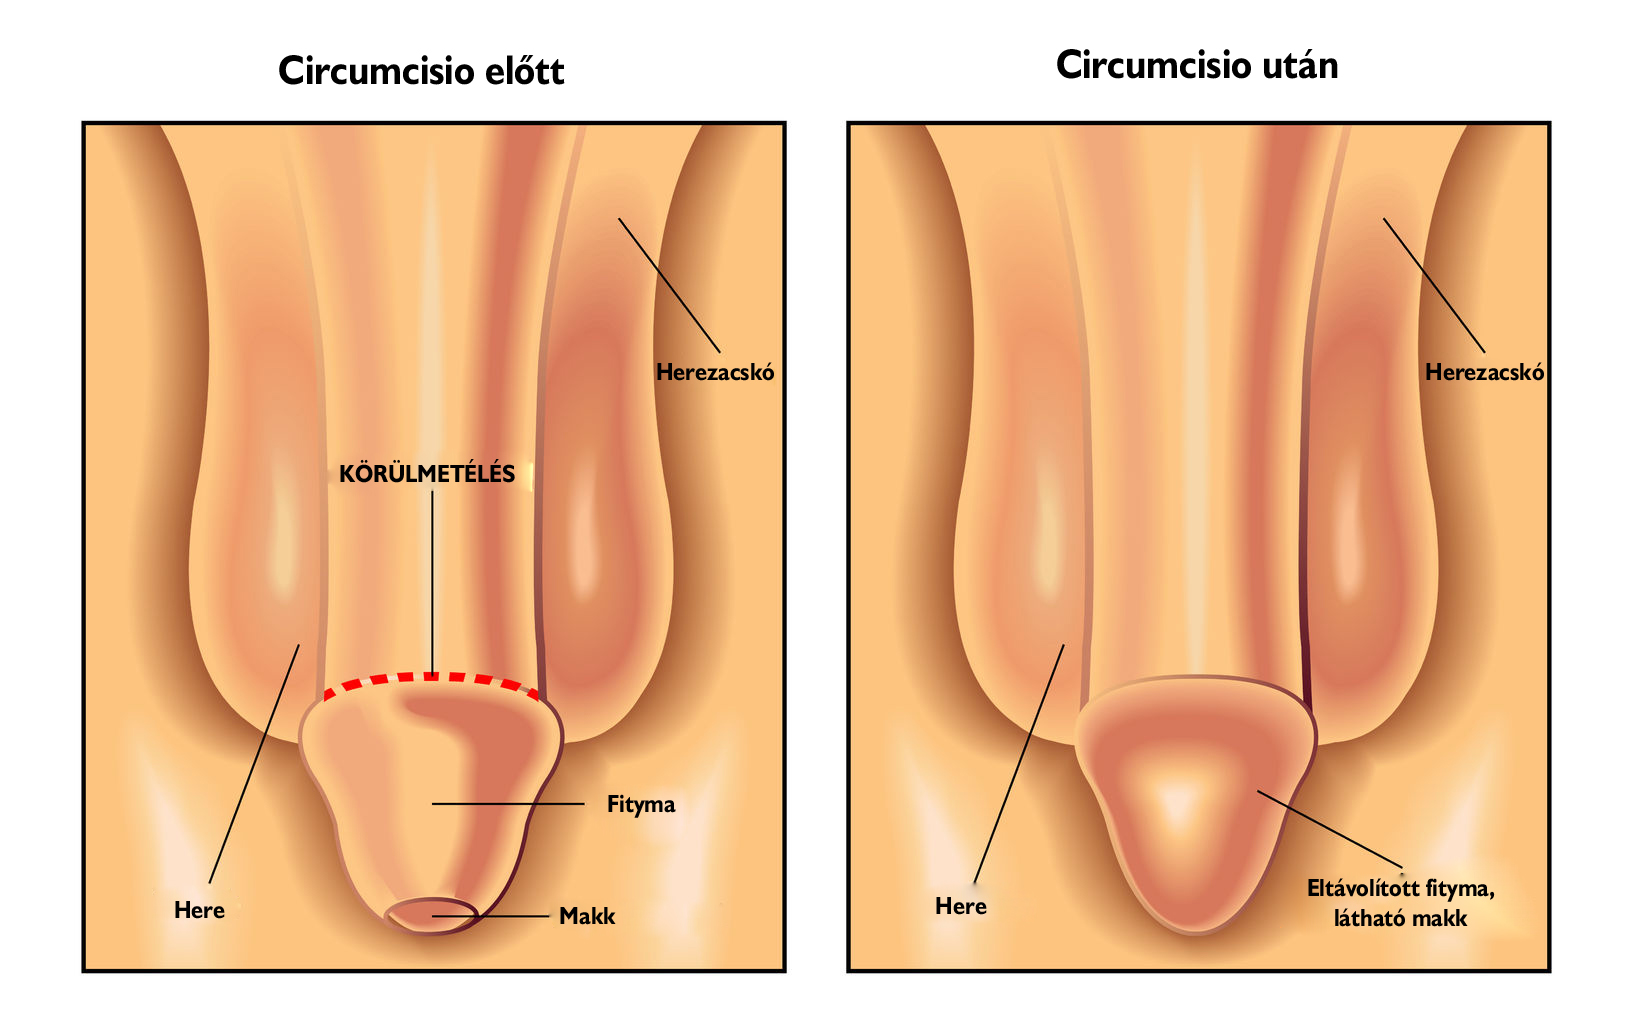 Urológiai műtét - Circumcisio - Körüllmetélés